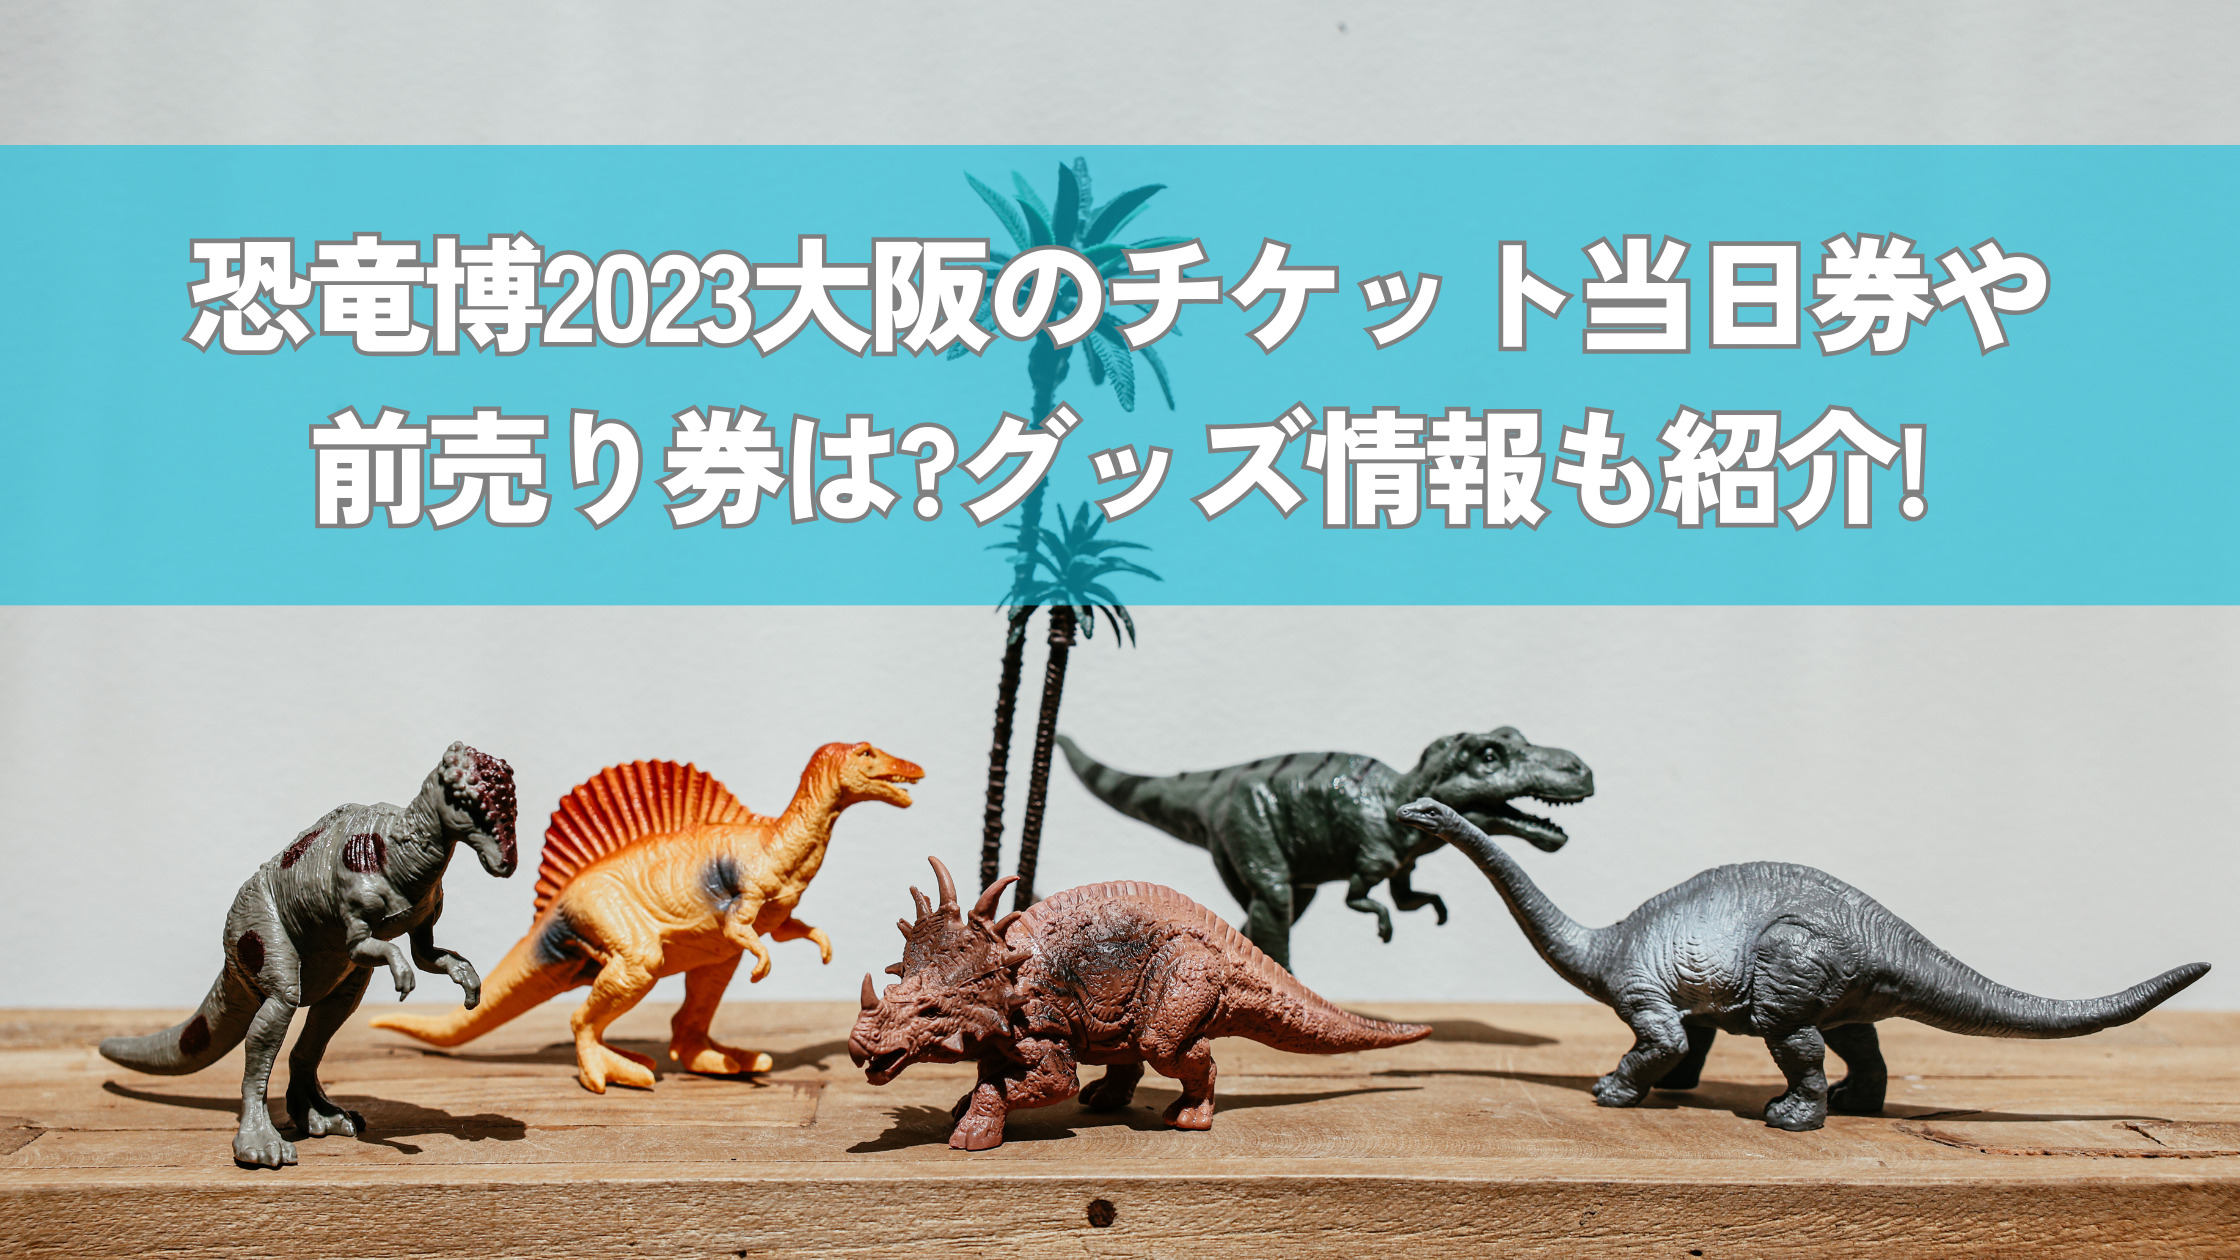 恐竜博2023チケット〜2枚セット